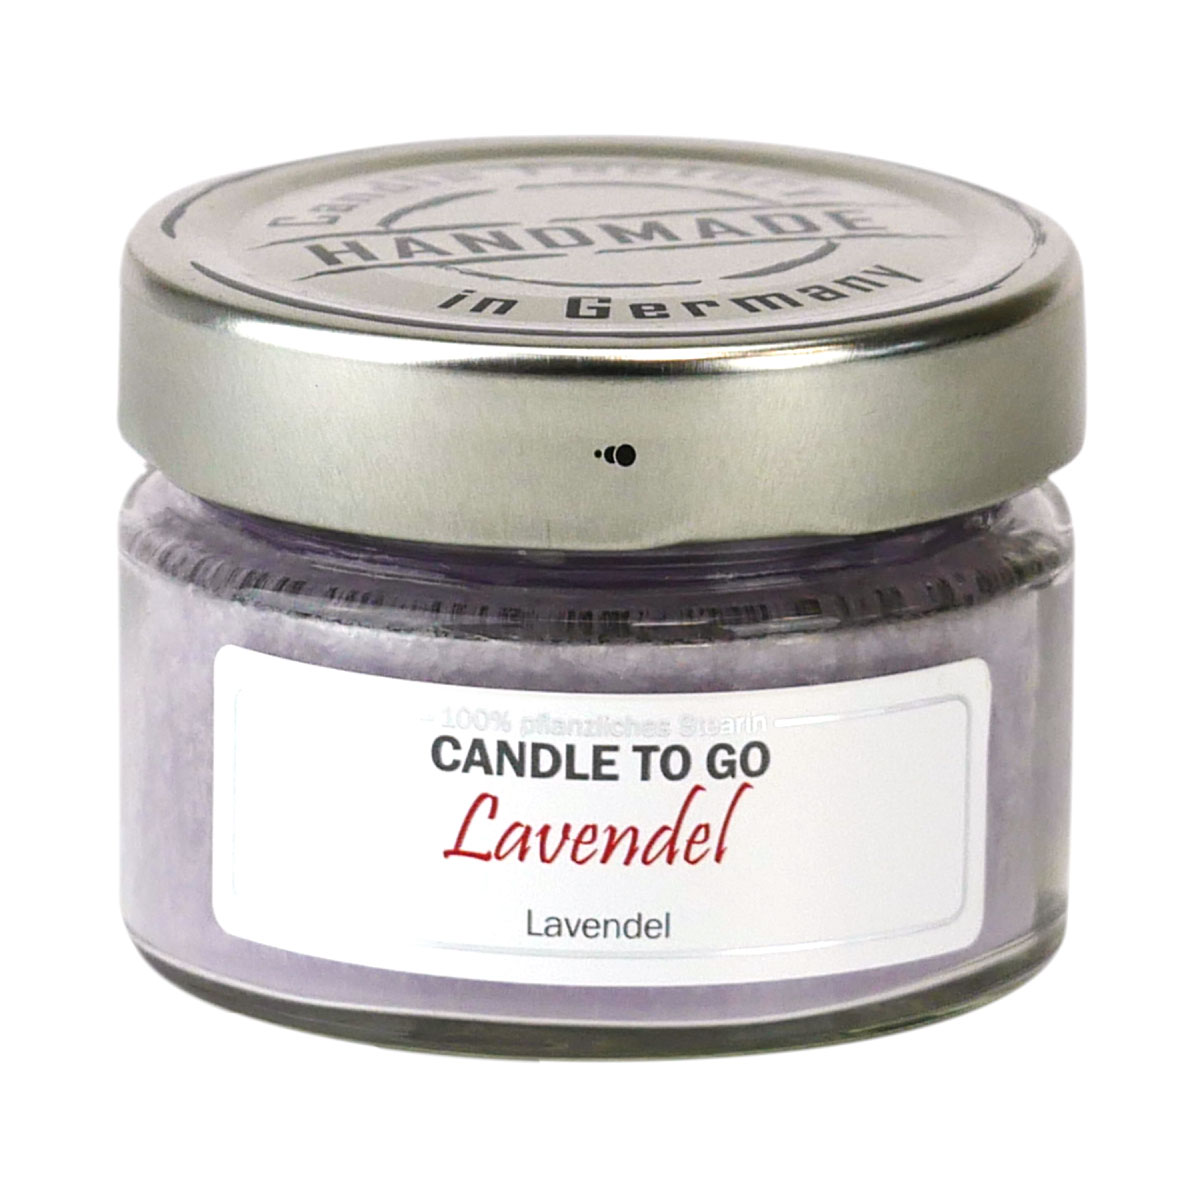 Lavendel - Candle to Go die Duftkerze für unterwegs